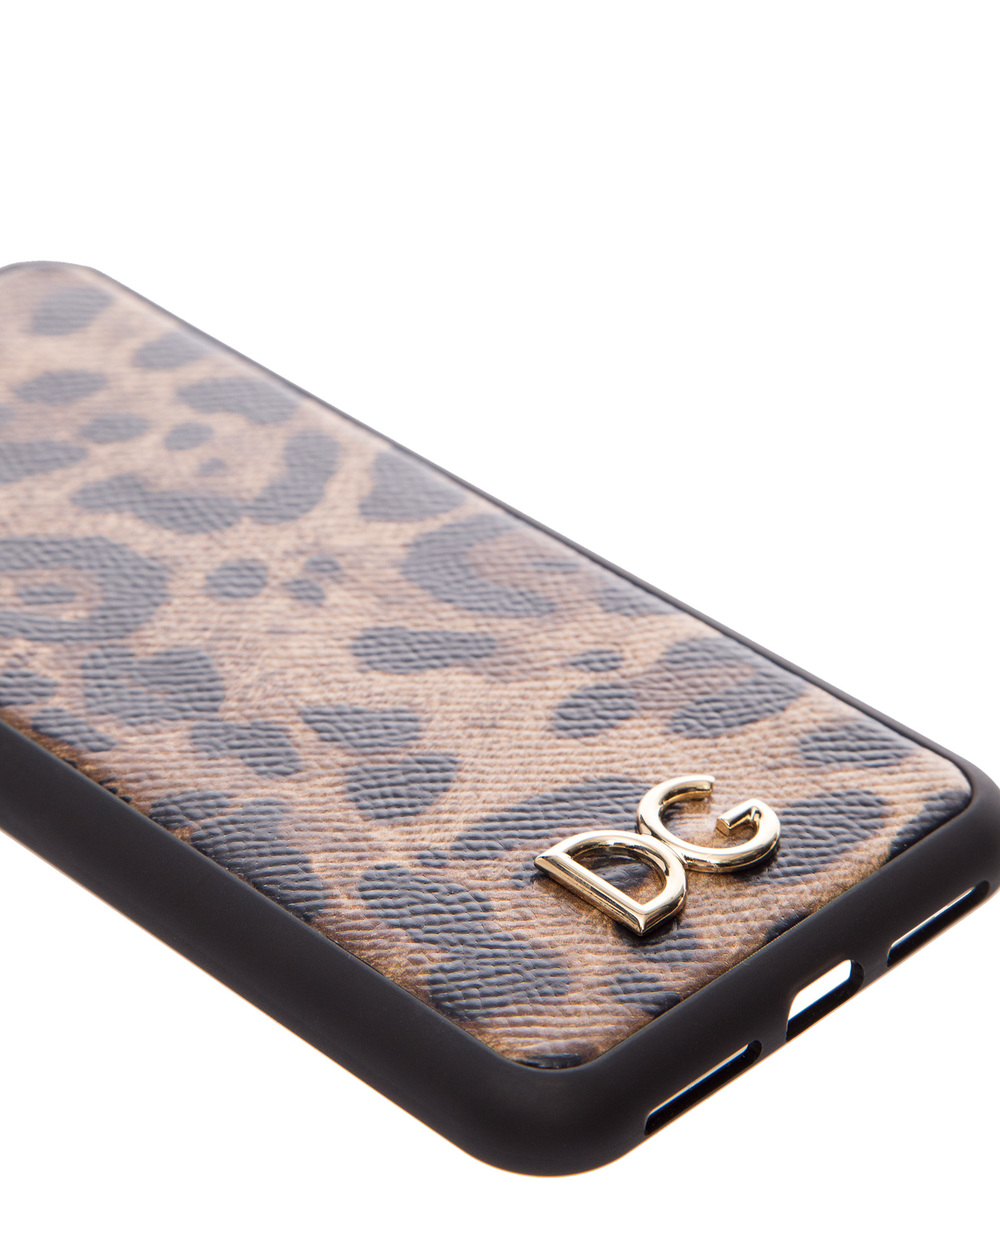 Чехол для iPhone XS Max Dolce&Gabbana BI2515-AI899, черный цвет • Купить в интернет-магазине Kameron